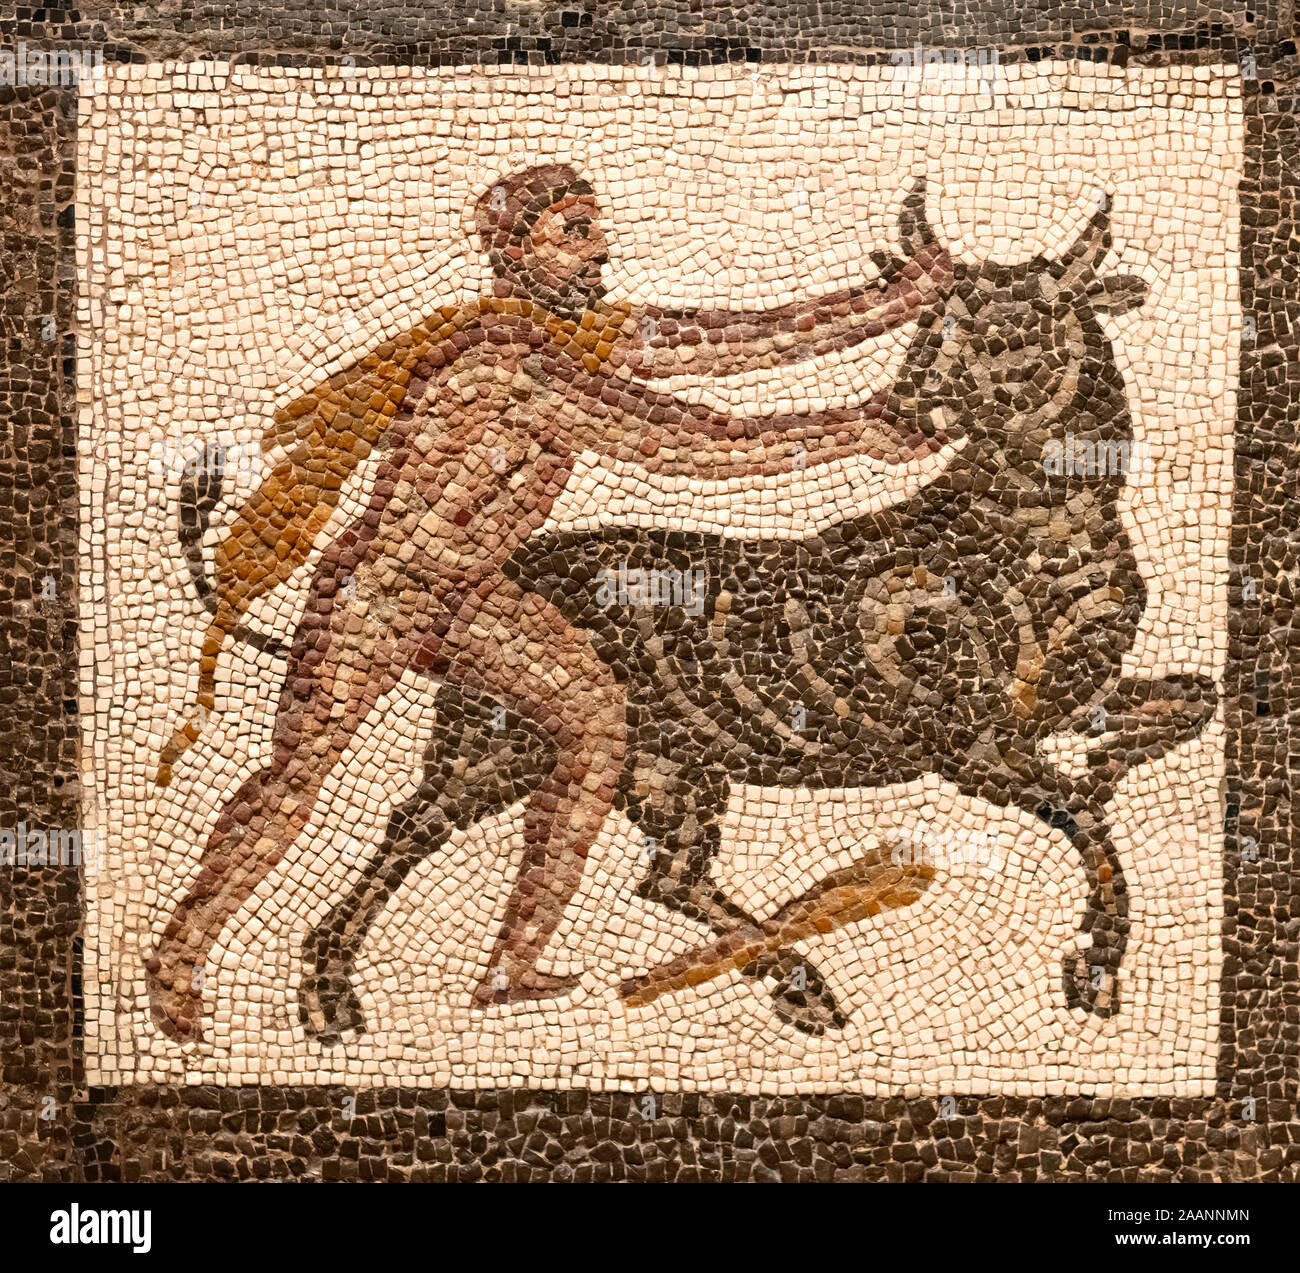 Mosaik, der eine Gott Herkules im Kampf mit einem Stier, Abbildung in brauner Farbe auf einem kleinen weißen Fliesen Hintergrund Stockfoto